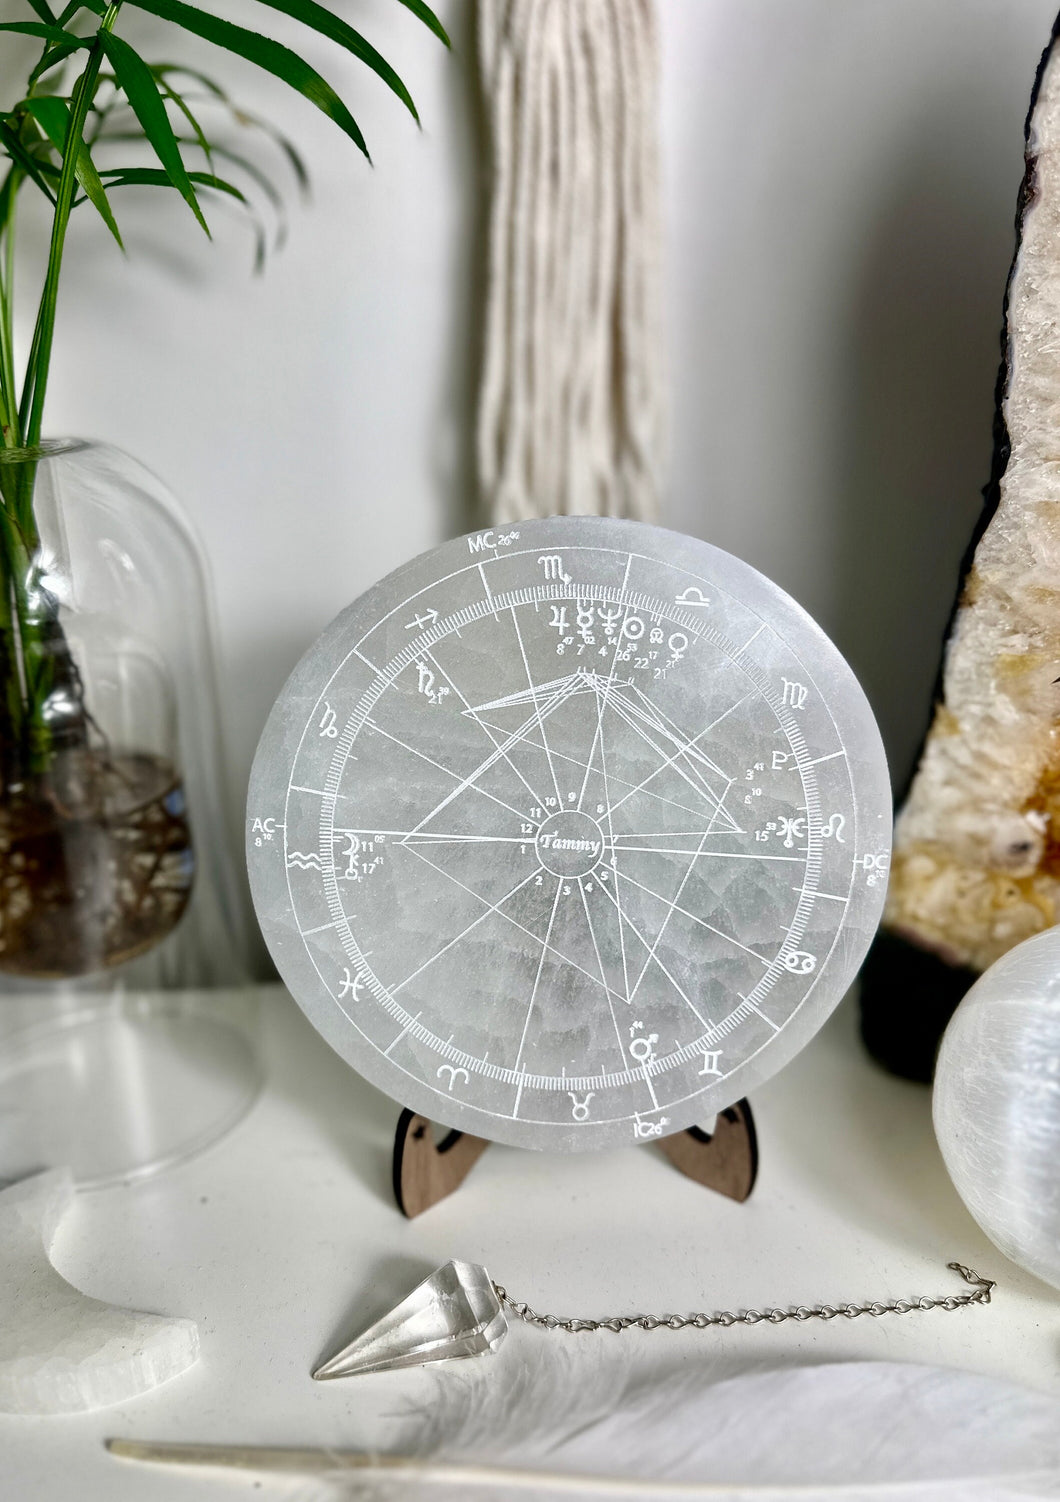 Custom astrology natal chart on selenite plate